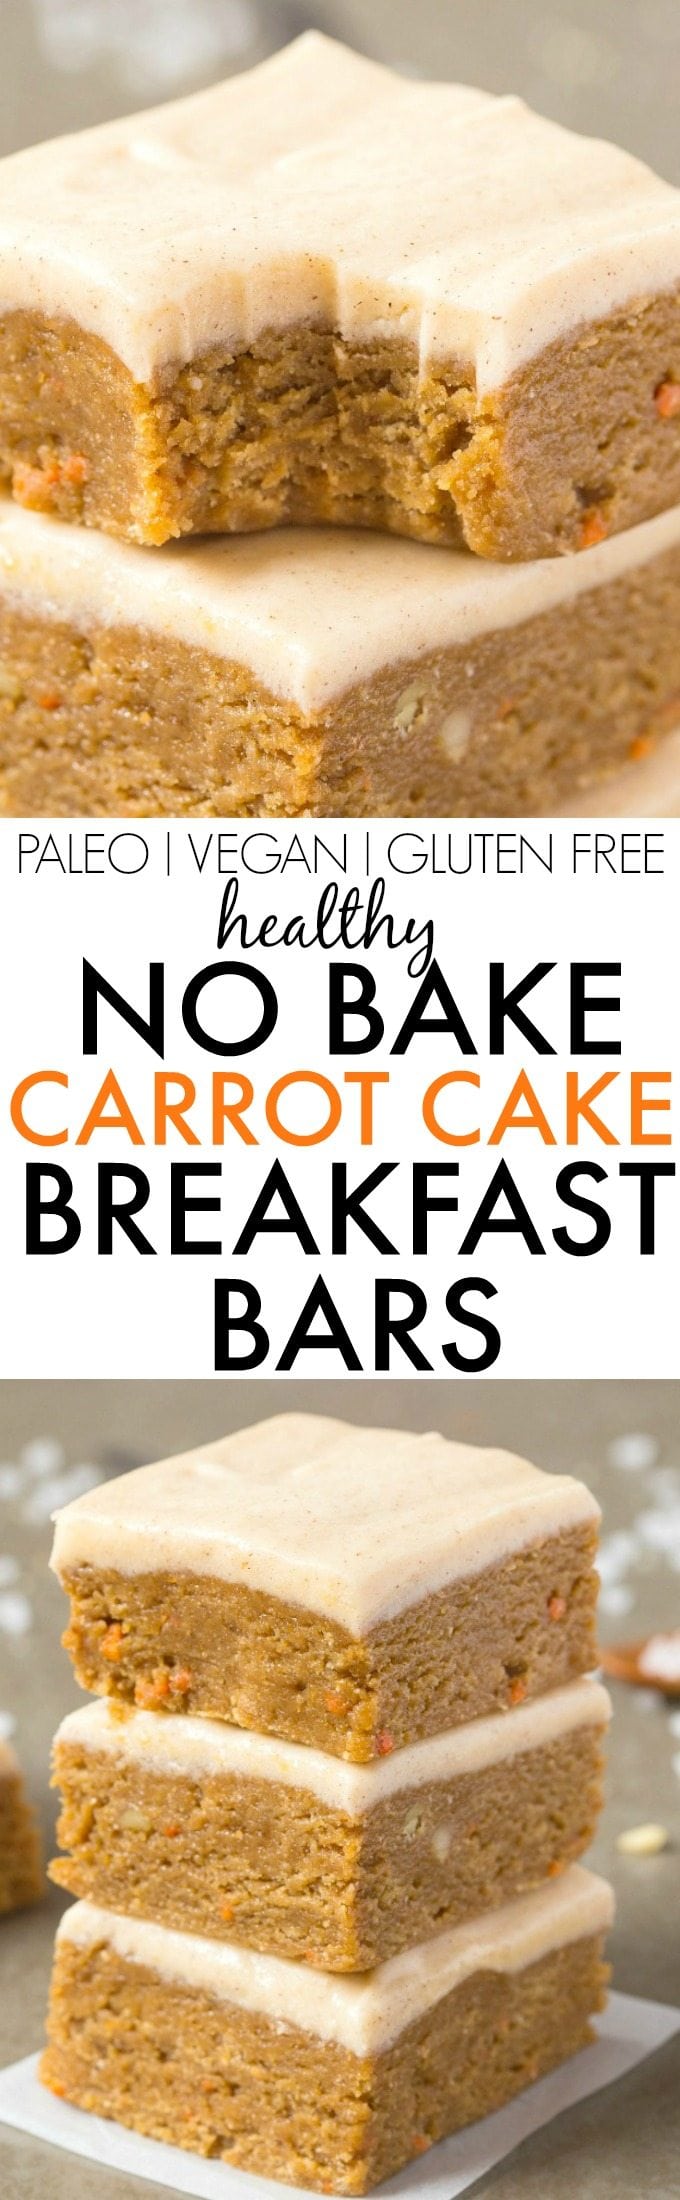 carrot cake bars for breakfast